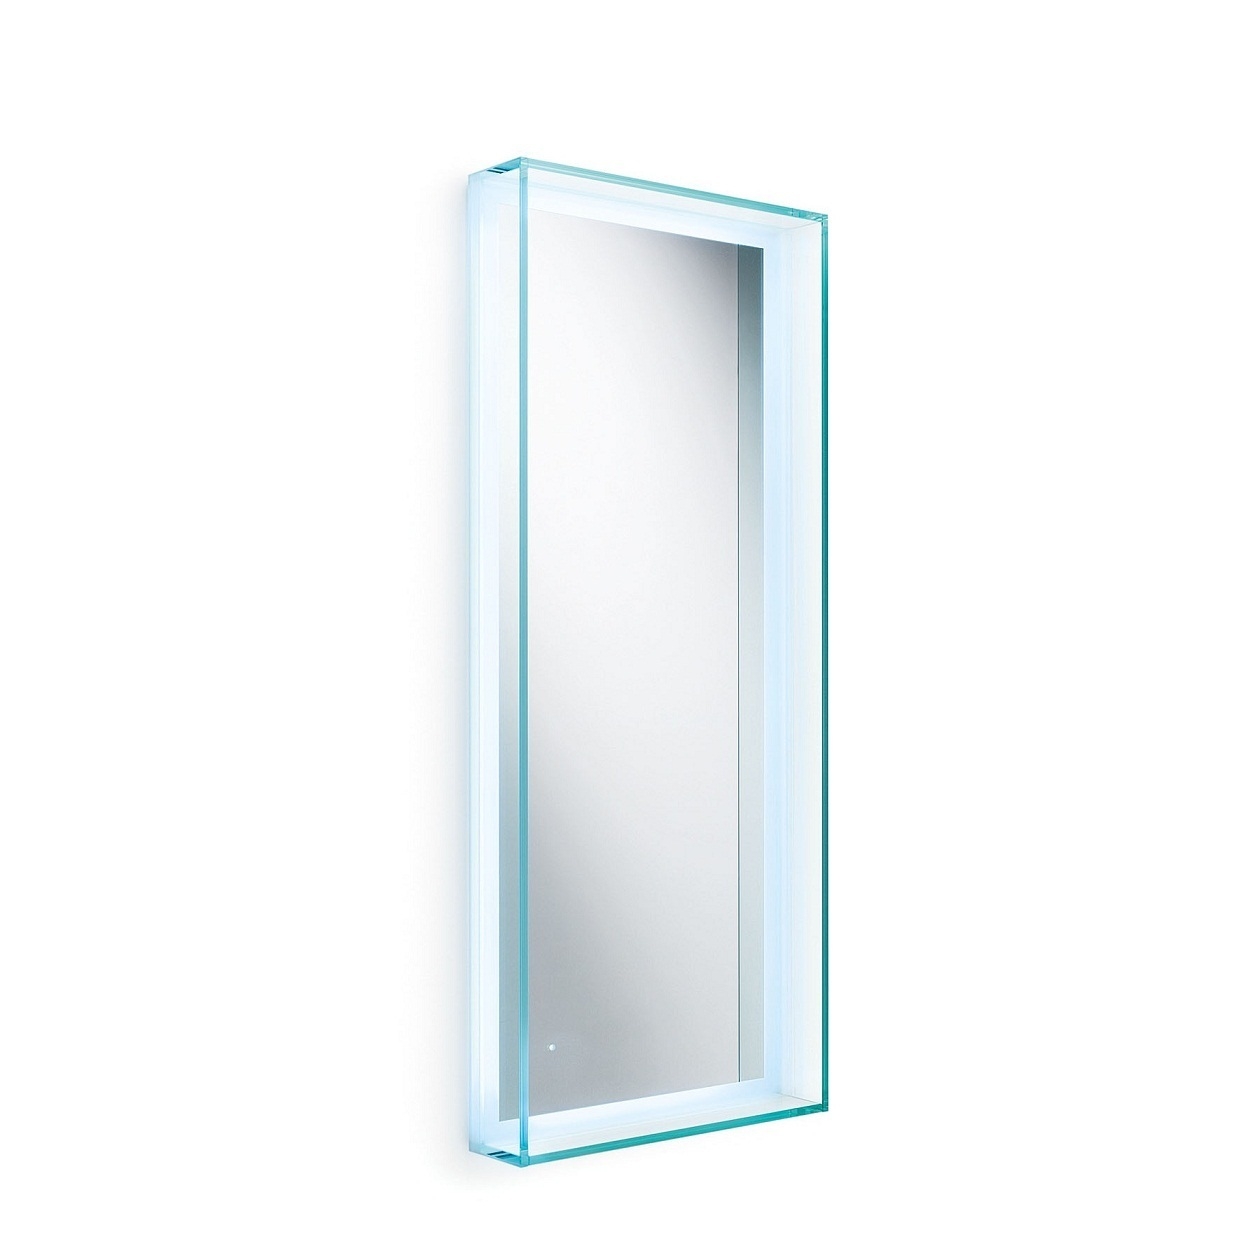 Speci 5680 mirror w glass frame LED light